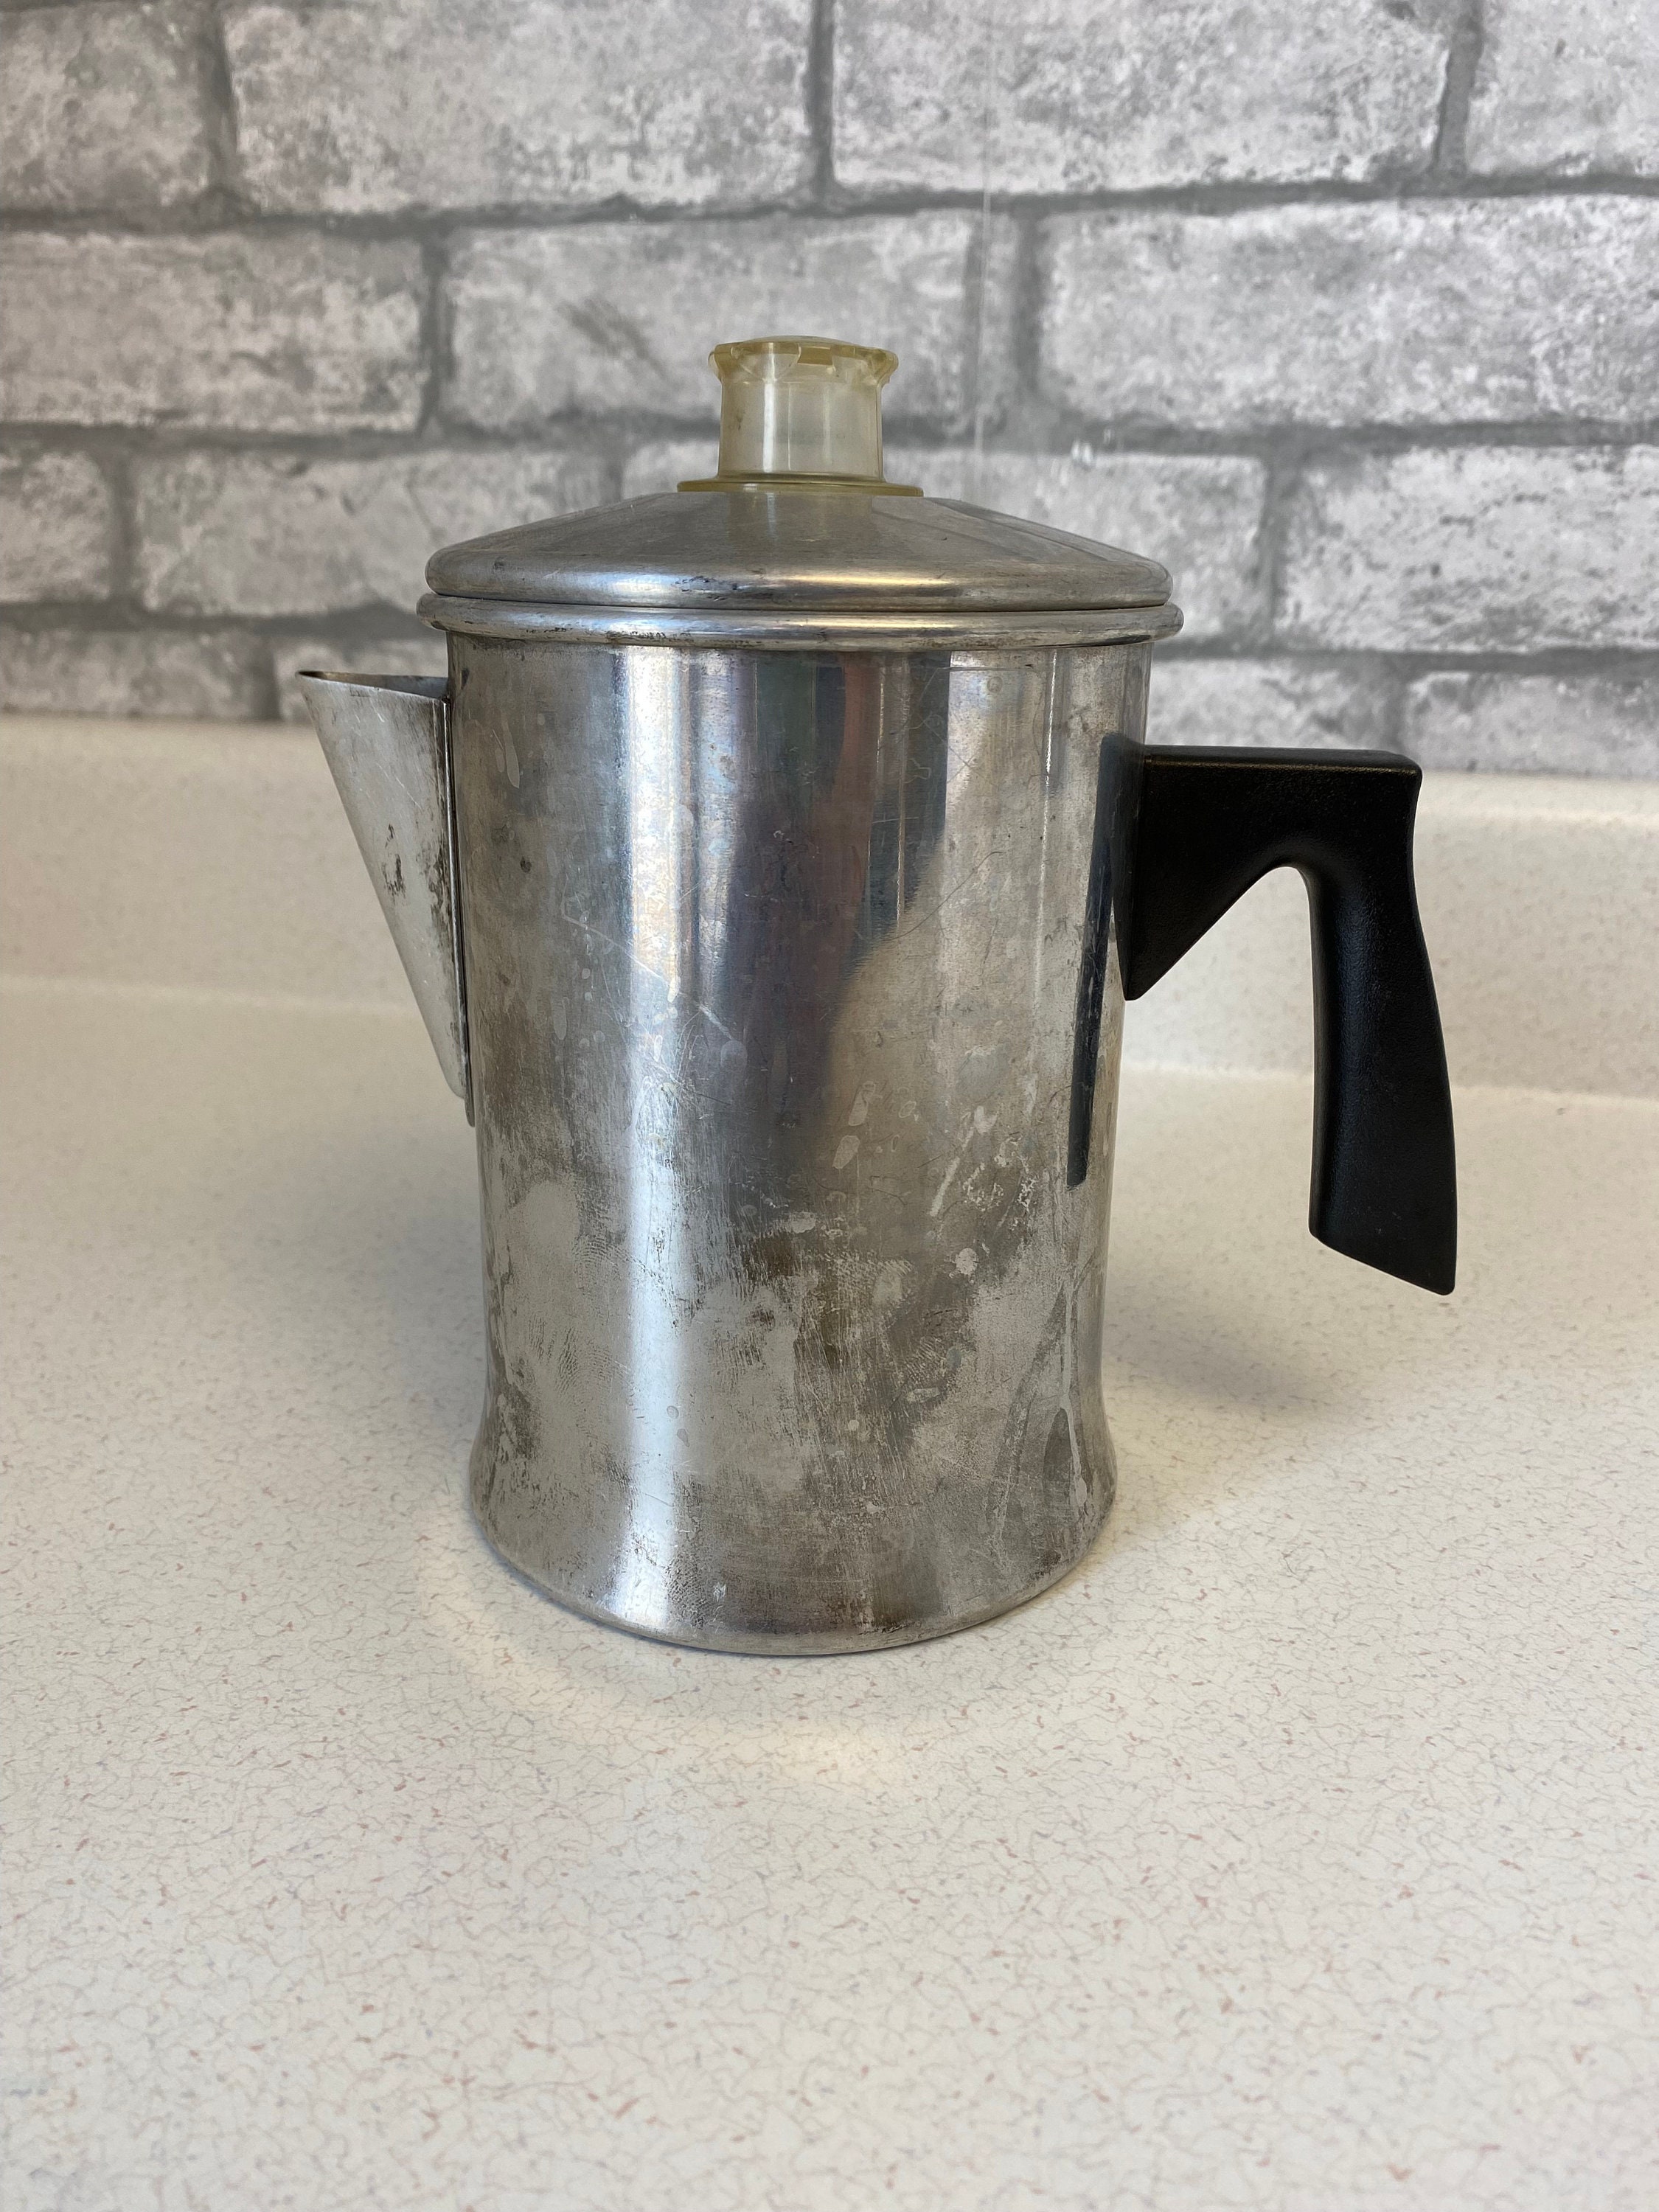 Antique Aluminum Coffee Percolator, 8 Cup, Patented Feb 15, 1916